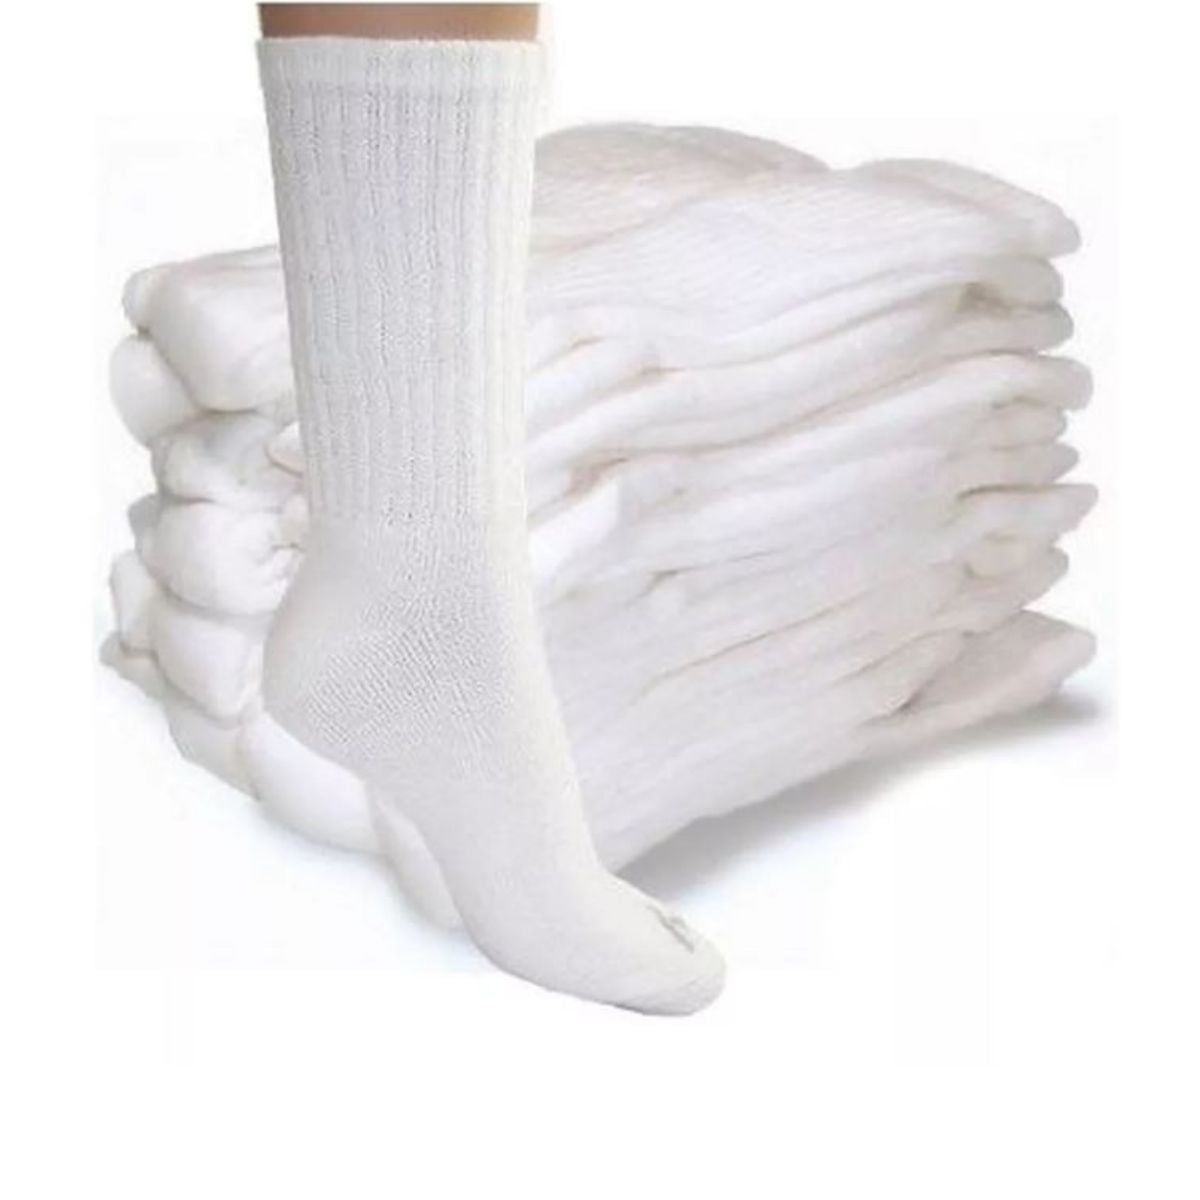 calcetas largas deportivas algodón (6 pares)